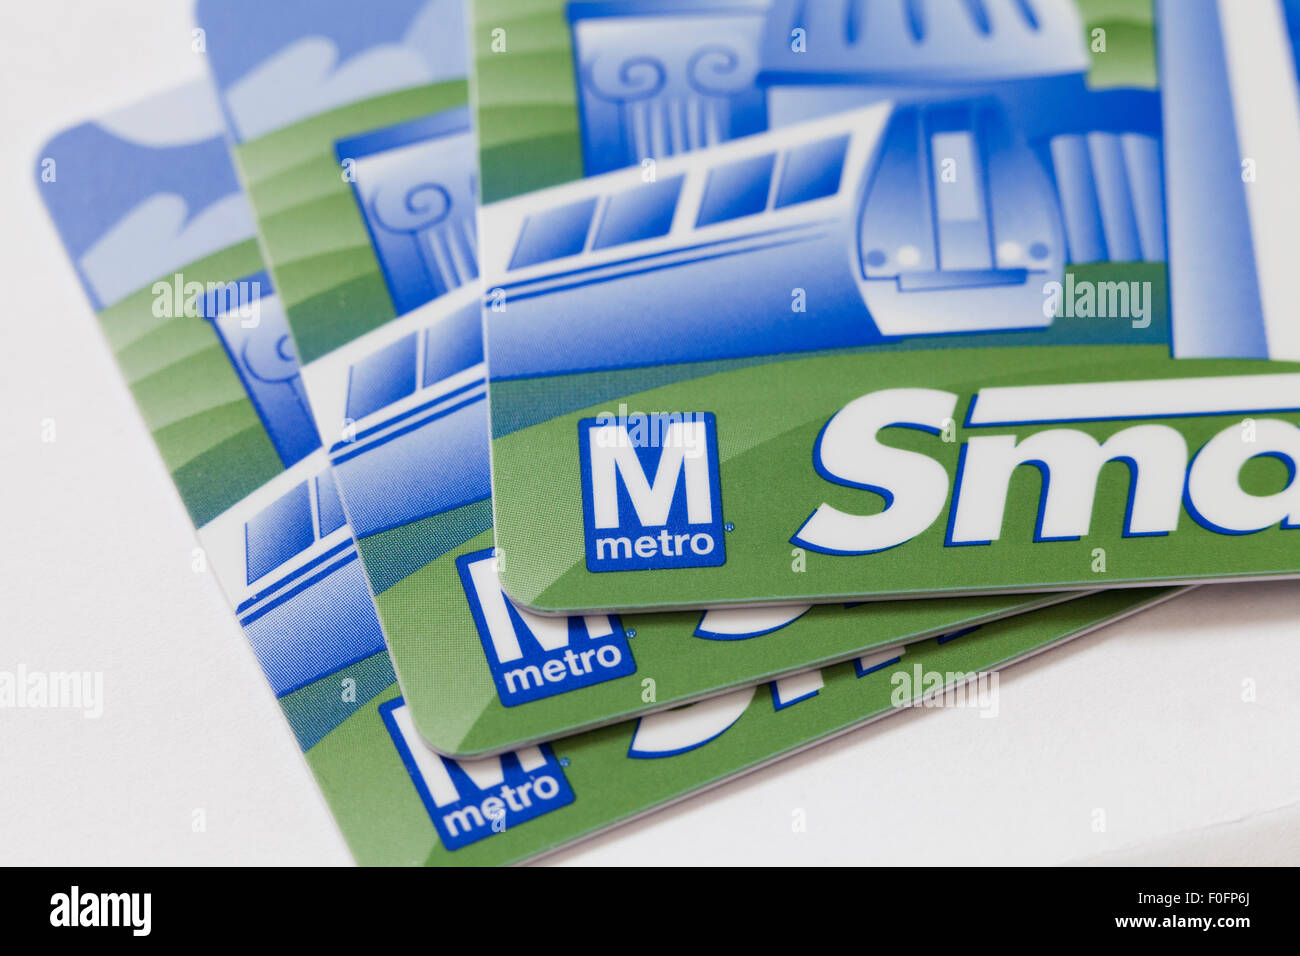 SmarTrip Washington Metropolitan Transit Authority (WMATA transportent) Contactez-moins-value store smart card - USA Banque D'Images